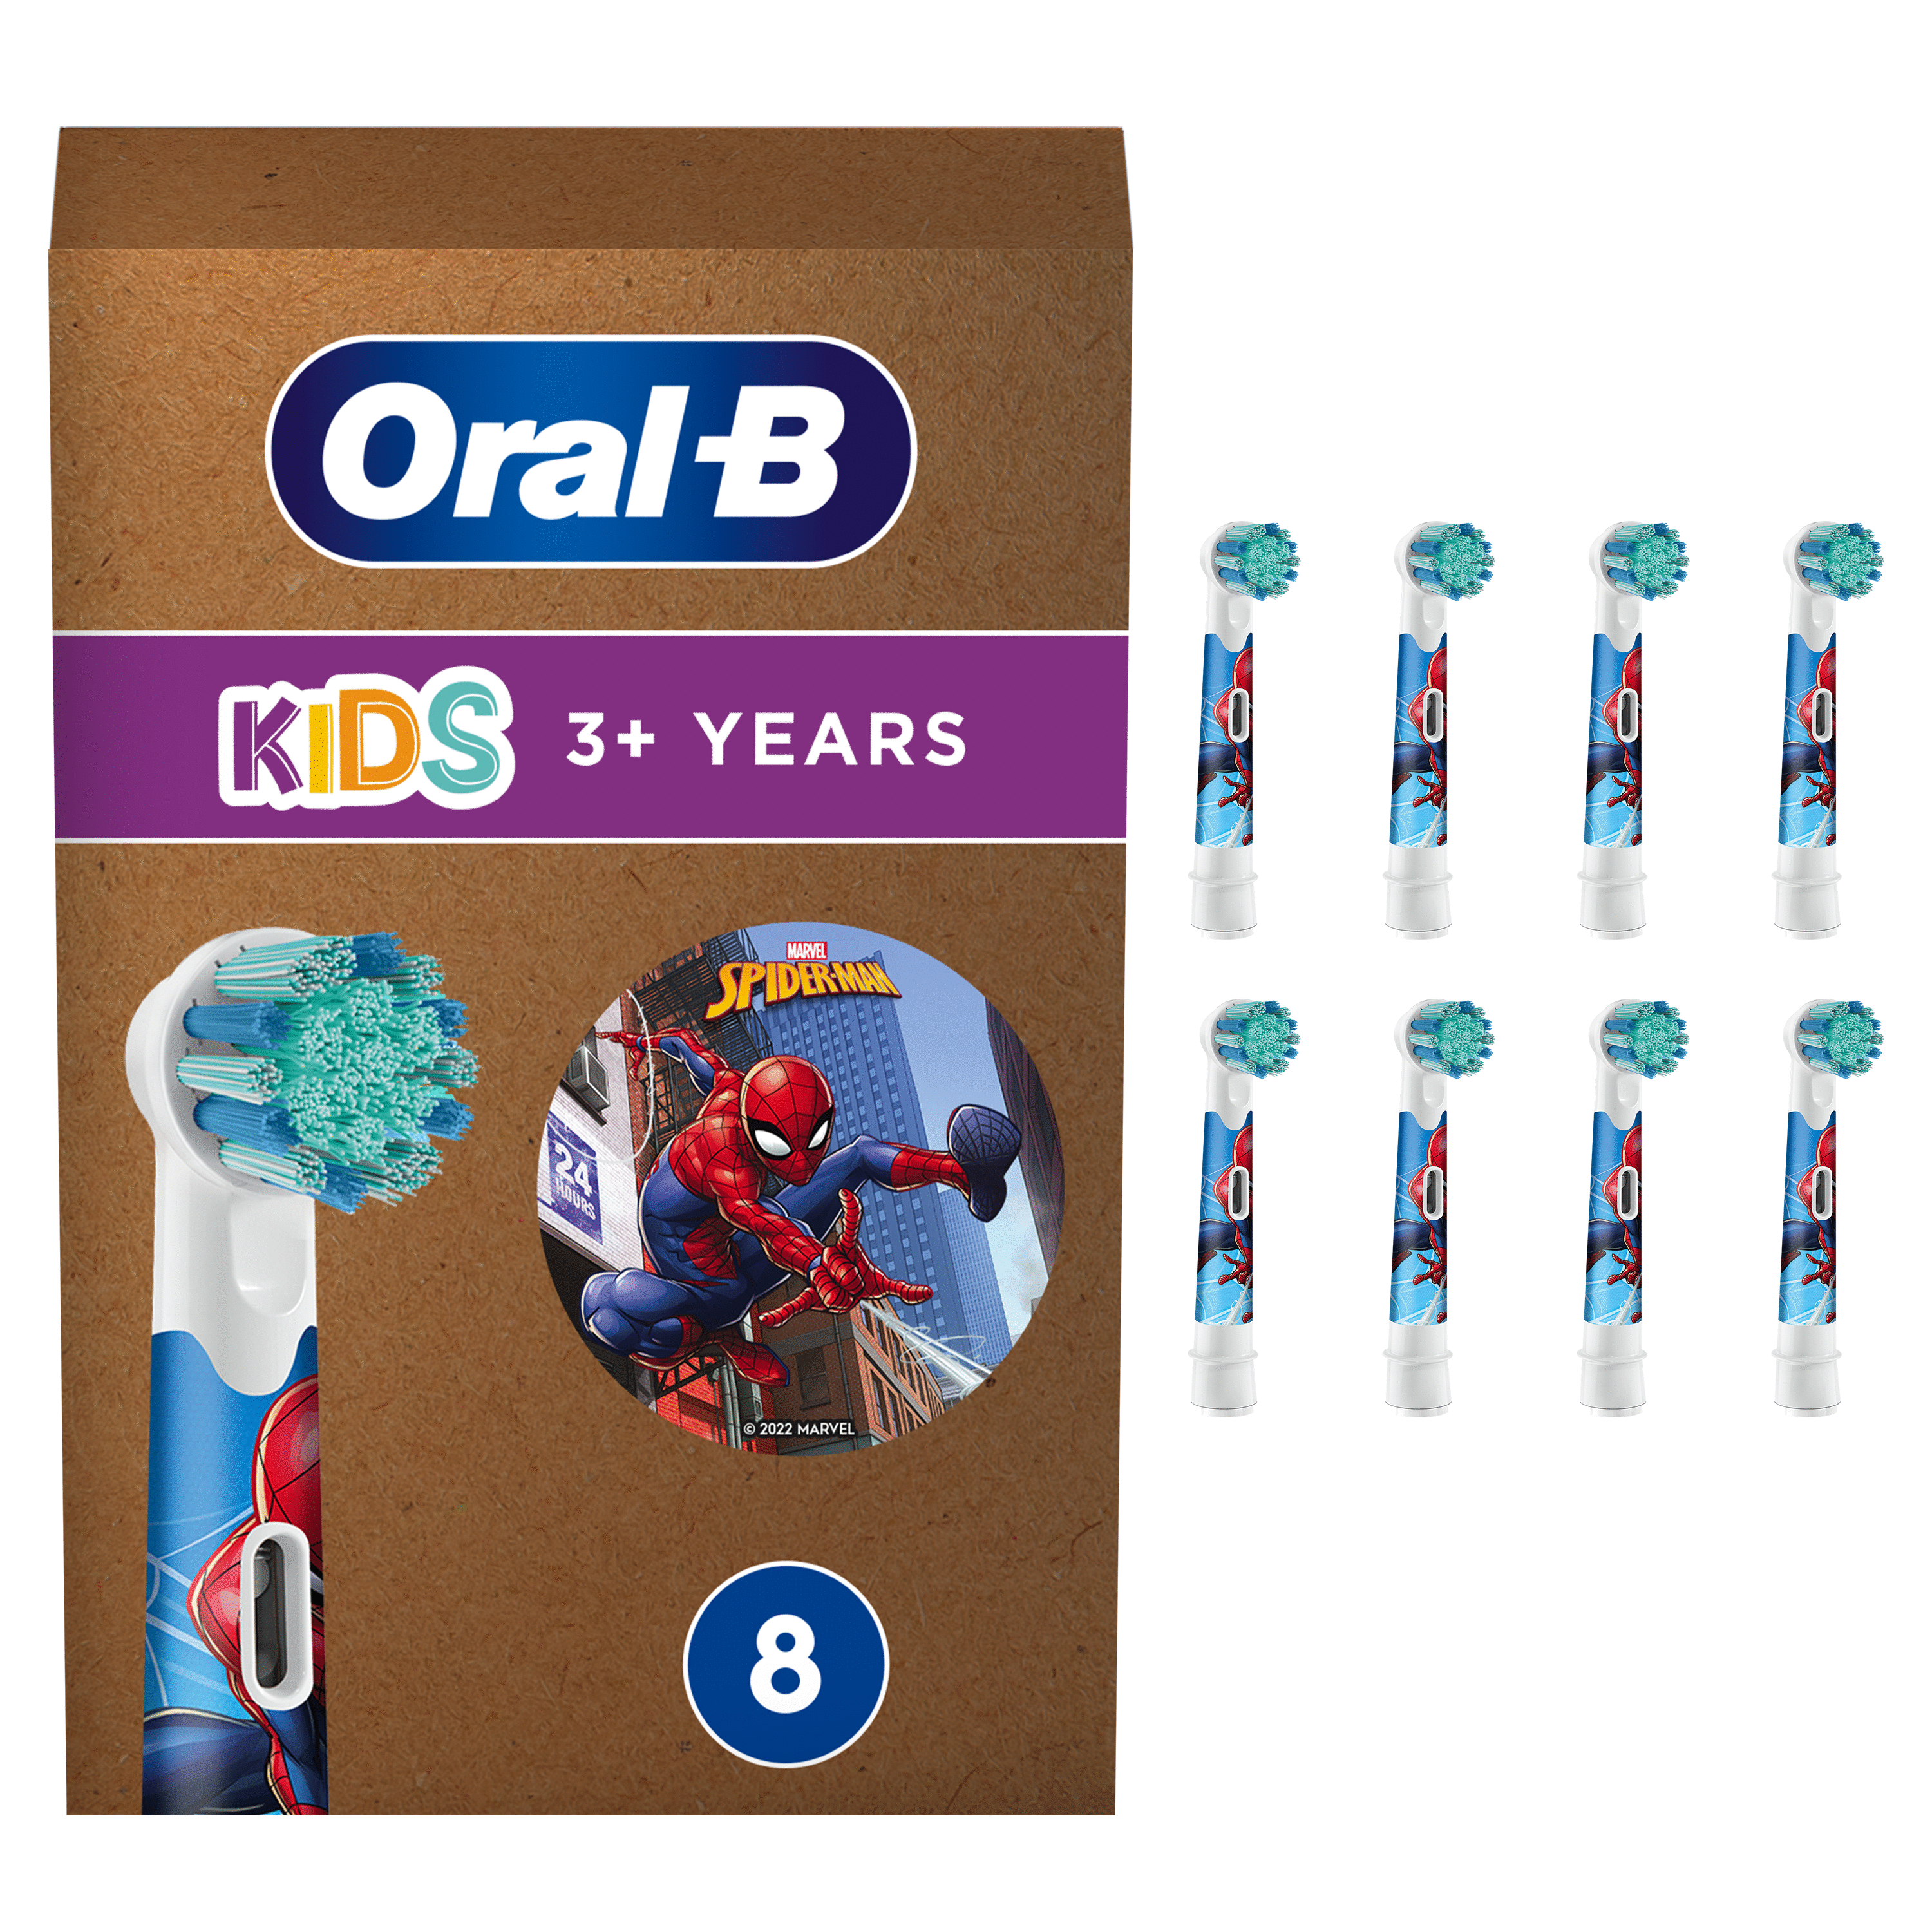 Oral-B Kids Brossette Avec Personnages Spiderman De Disney, Lot De 8, Convient À Une Boîte Aux Lettres